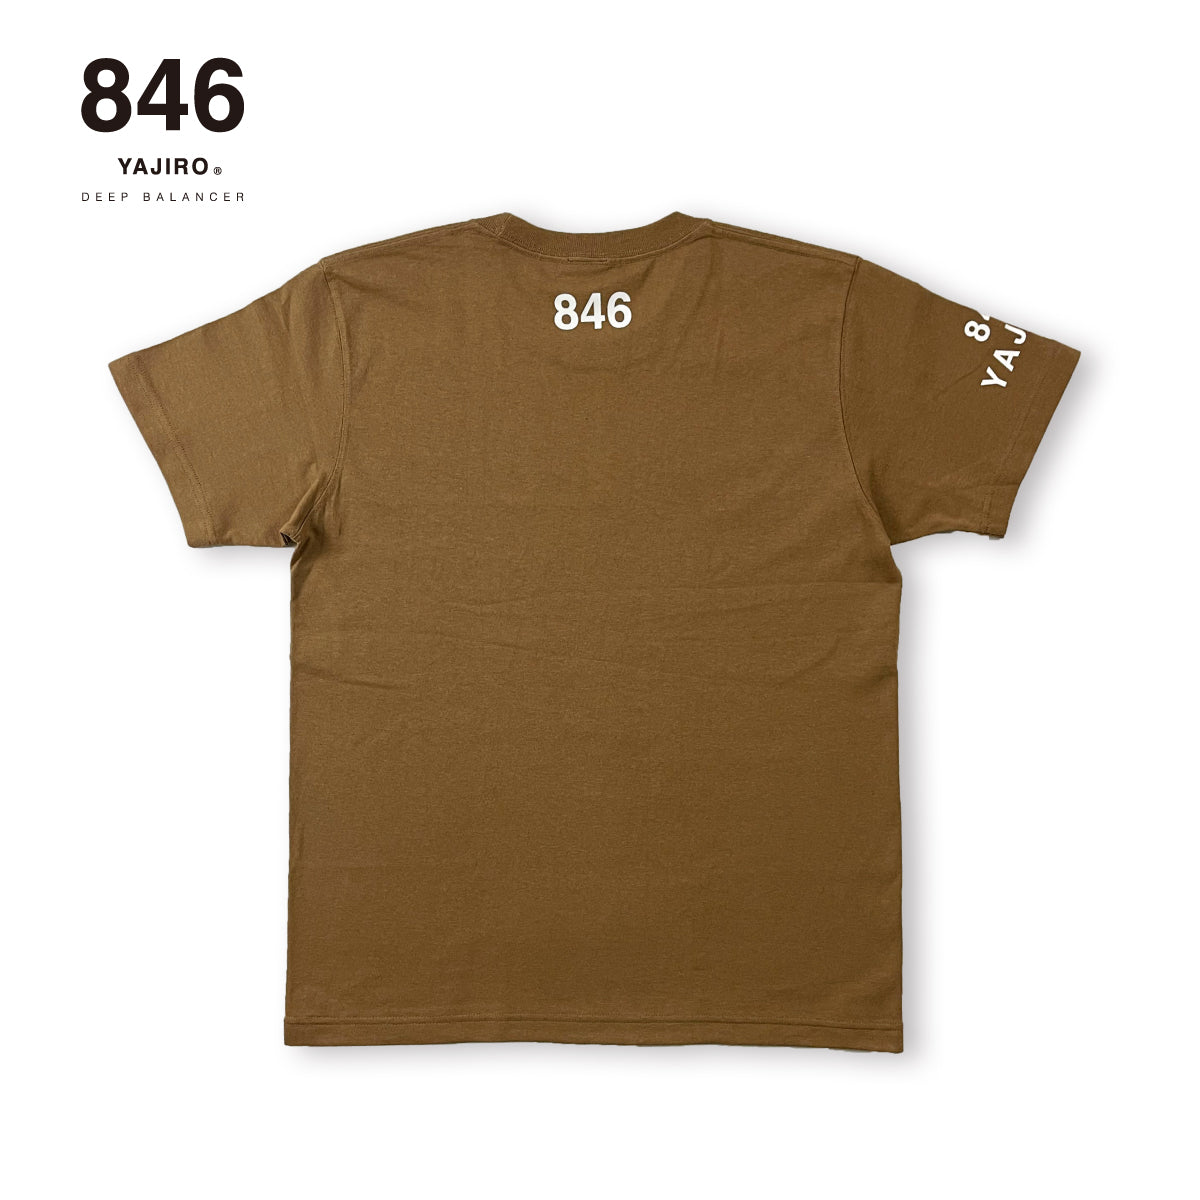 846YAJIRO Cotton T-shirt HeavyModel【Darkcamel】(Unisex)